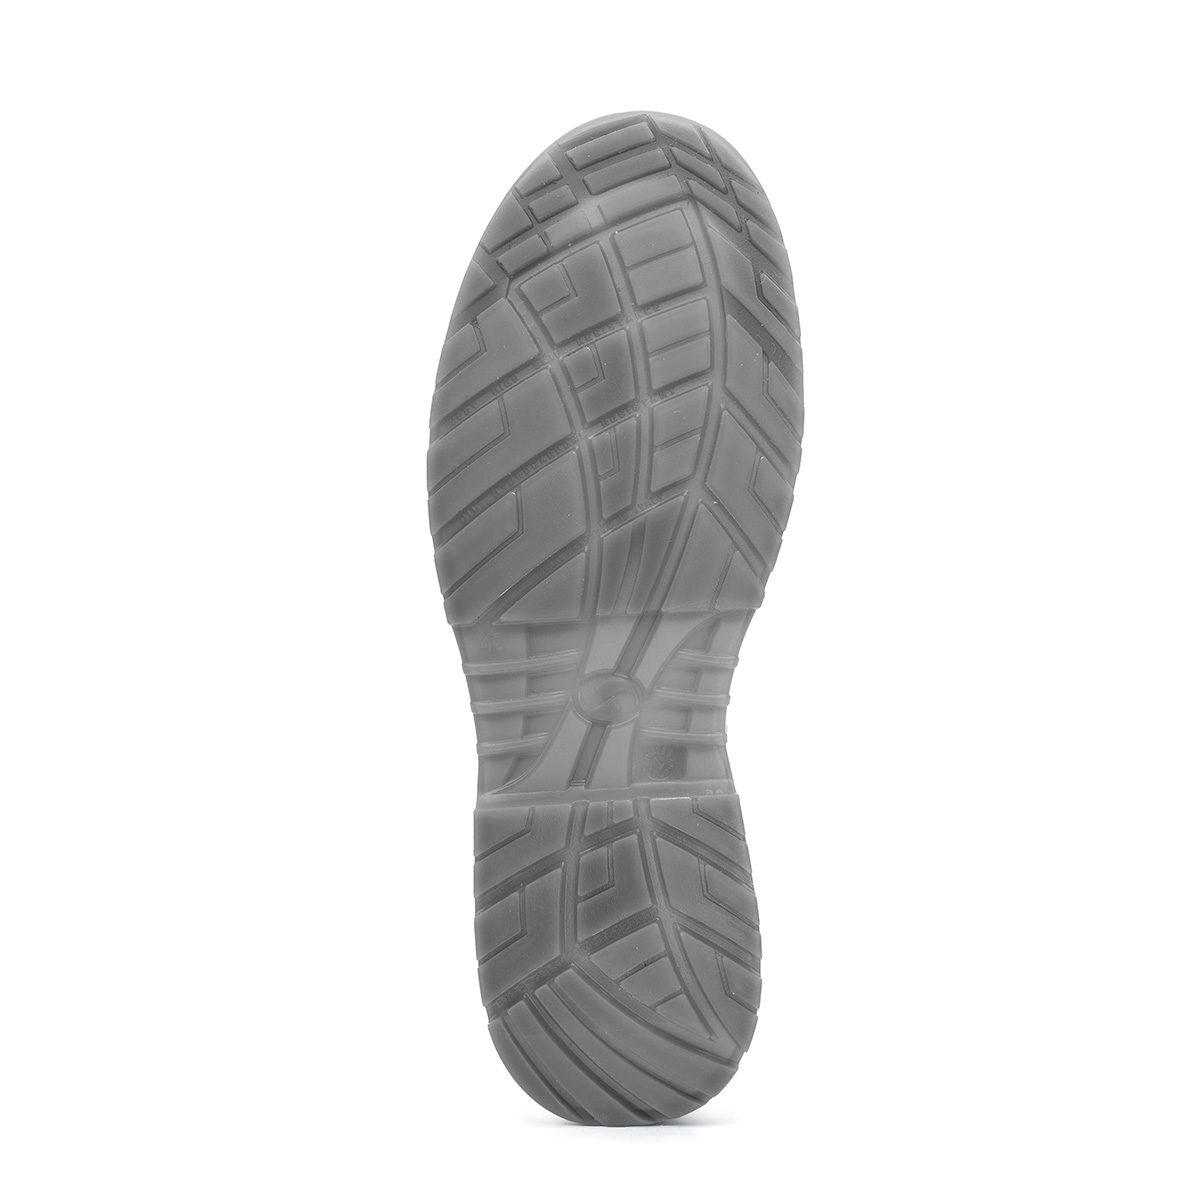 Crystal VENEZIA - Low Shoe protezione SRC di classe Shoes Safety - *CI con Codice Peak S2 Sixton 86203-00 modello